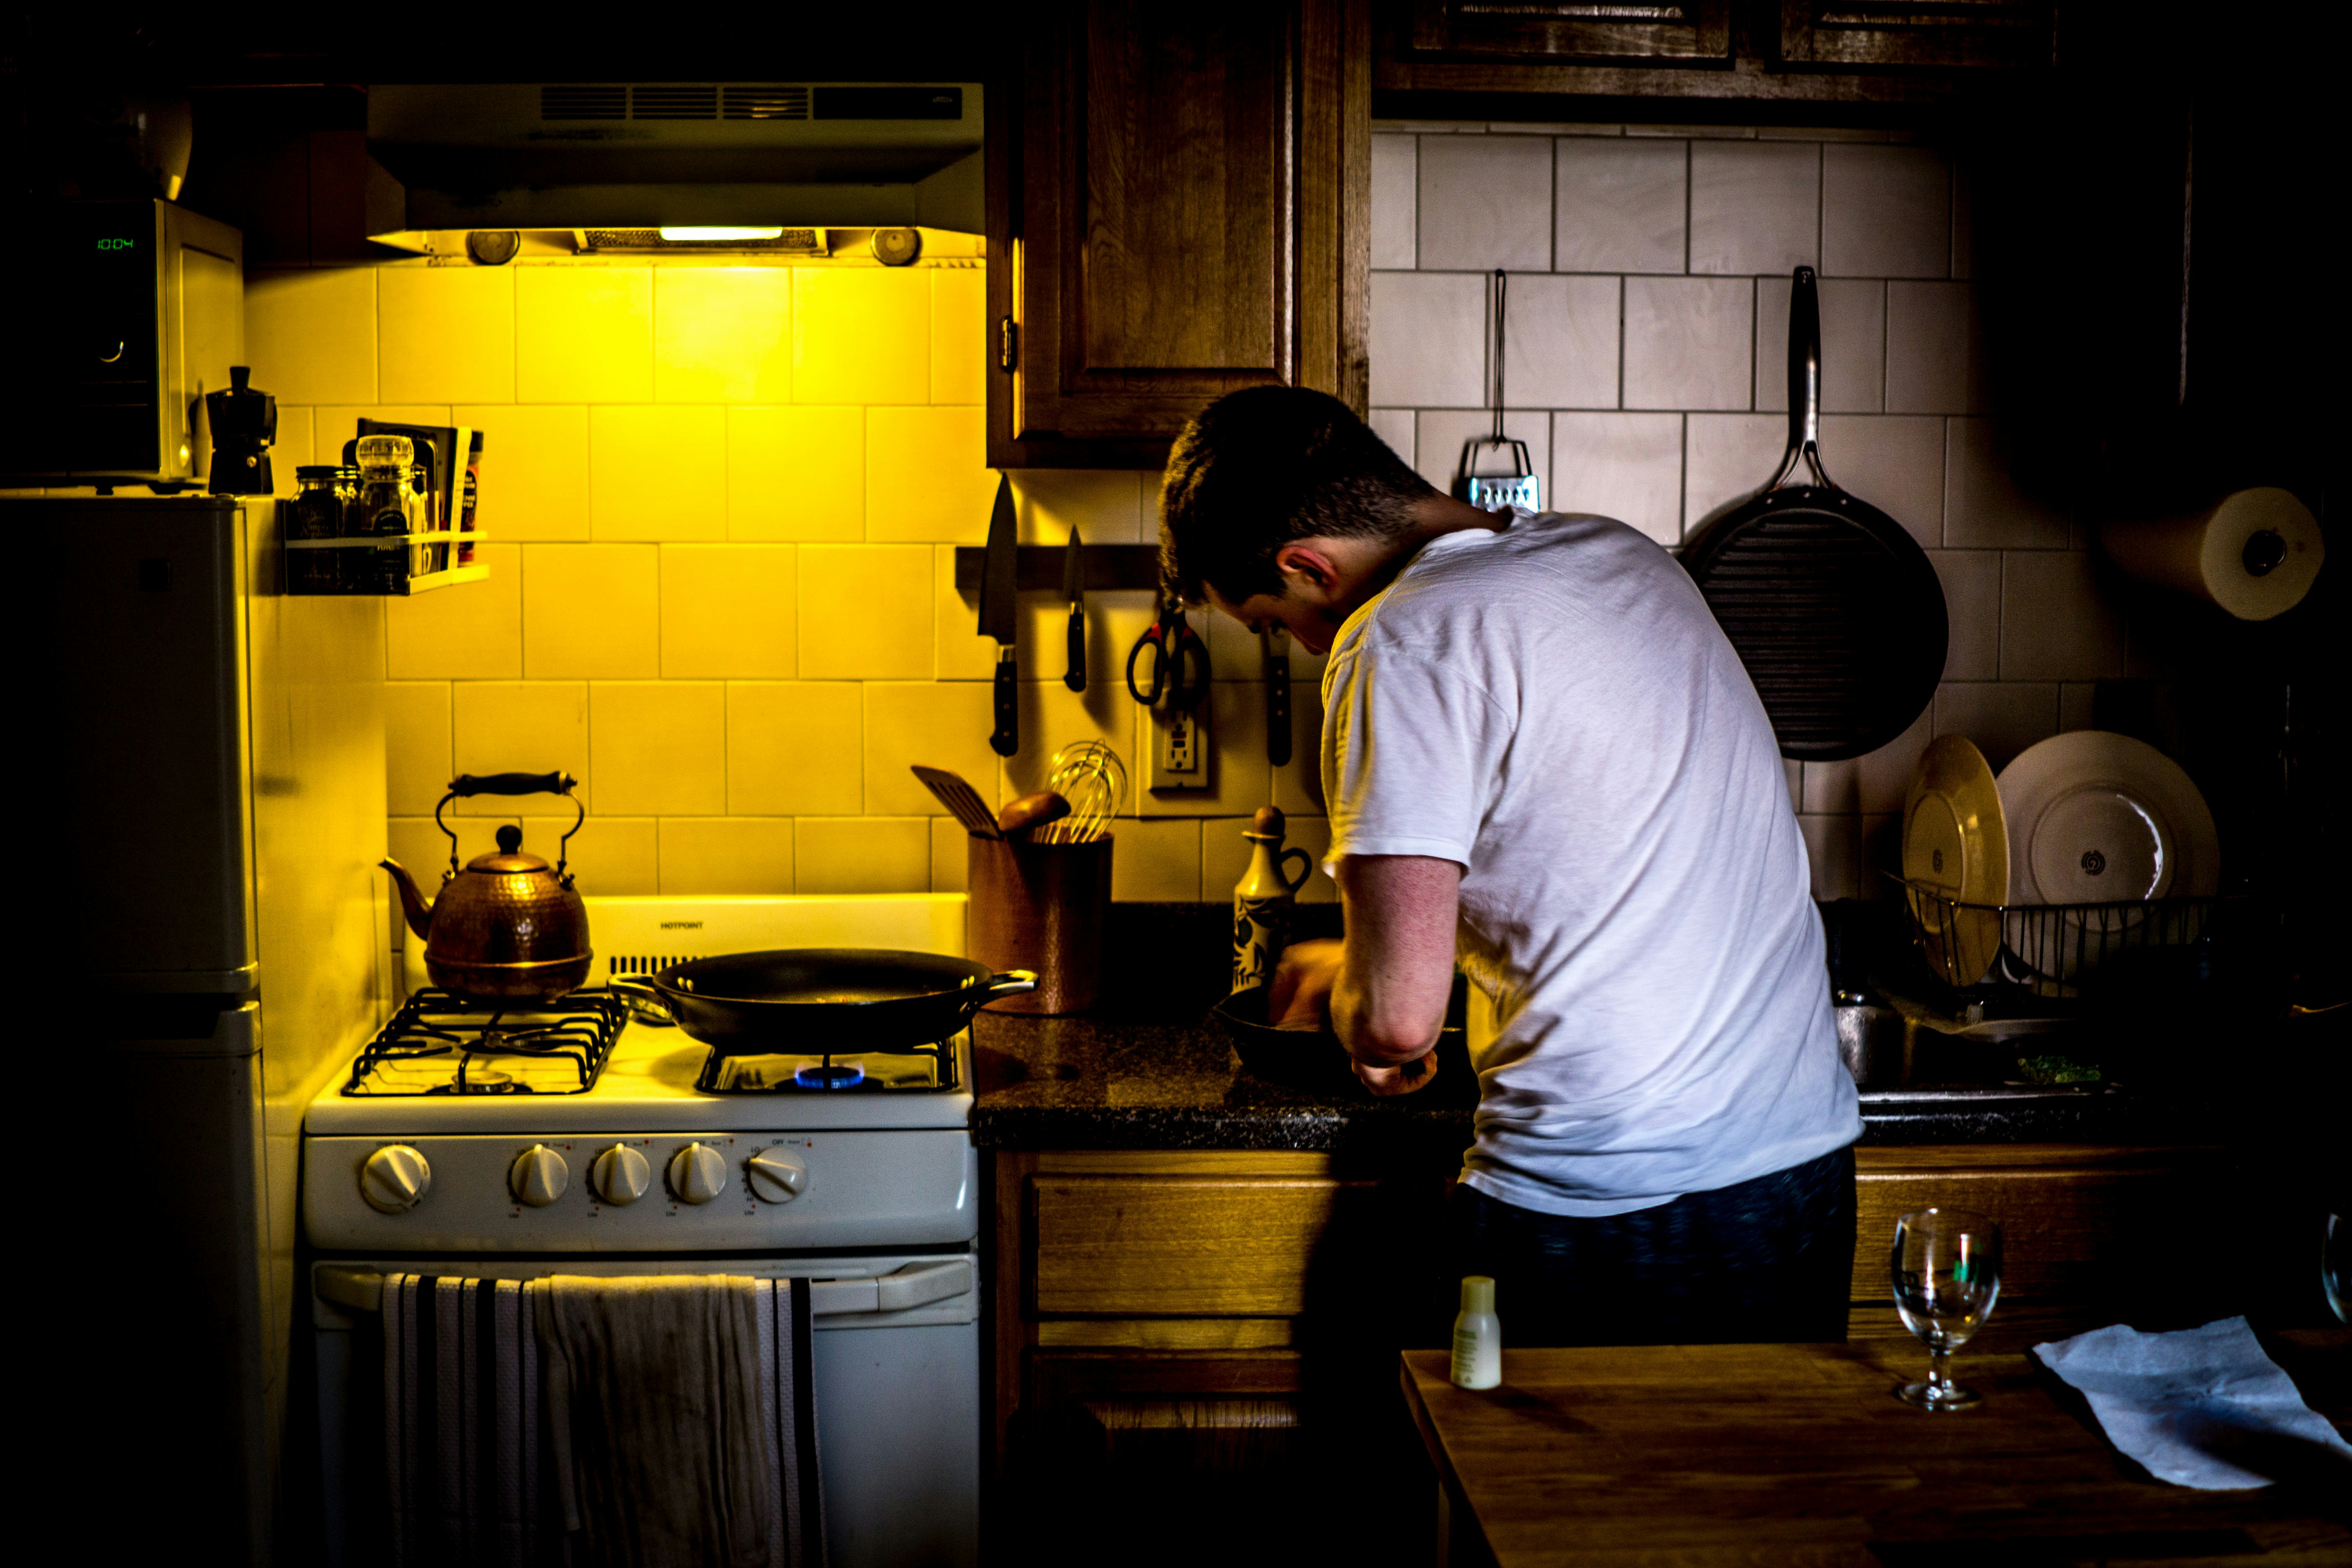 Ein Mann beim Kochen | Quelle: Unplash